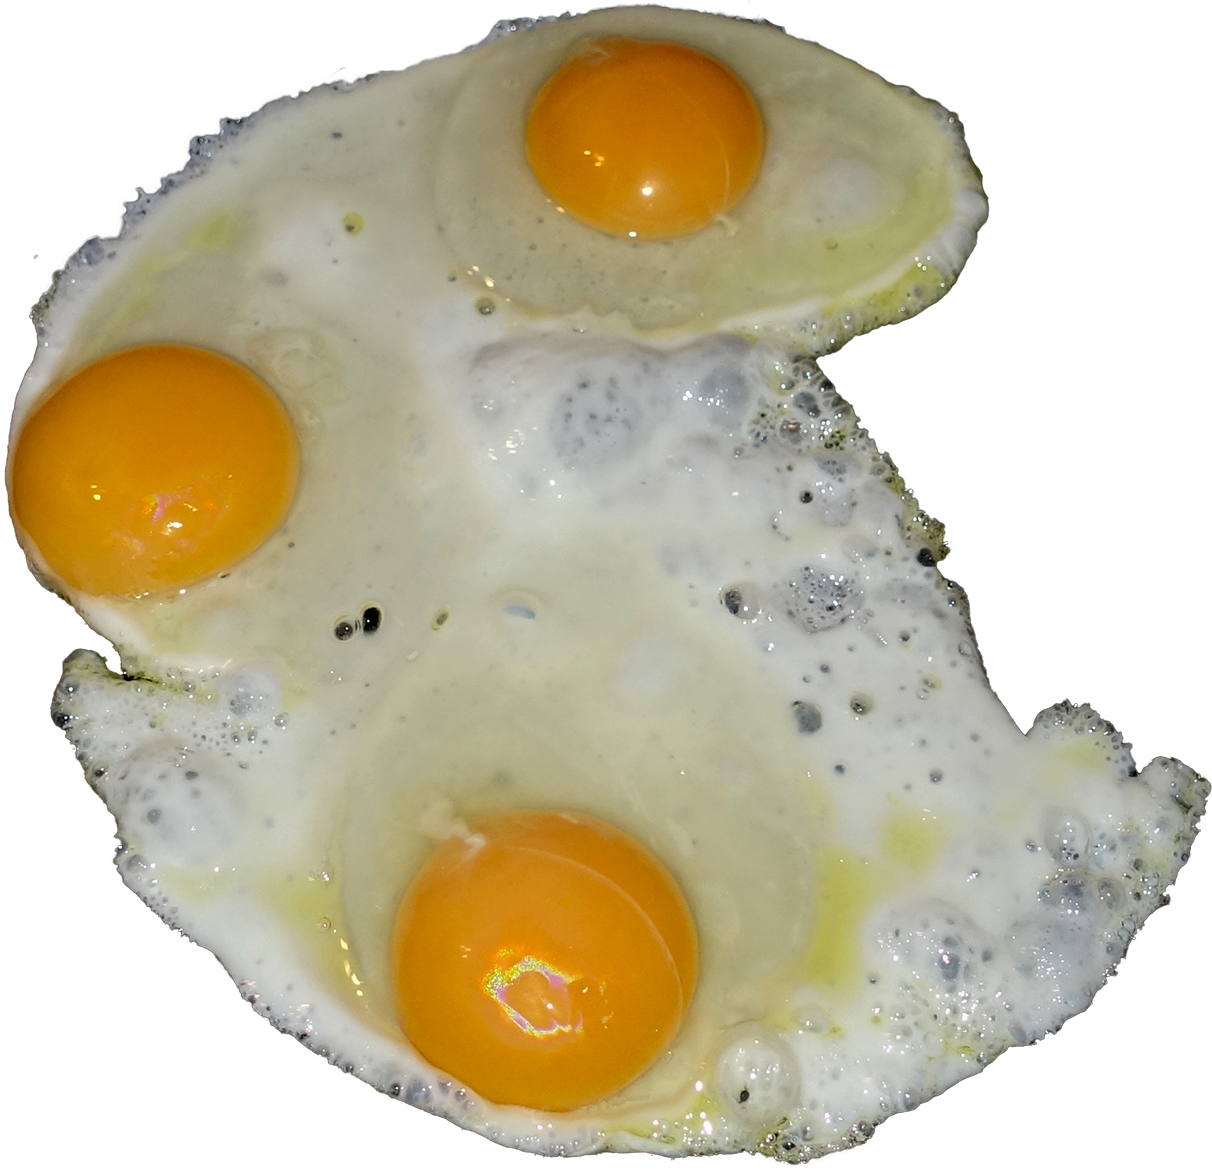 egg png download - 4096*4096 - Free Transparent Fried Egg png